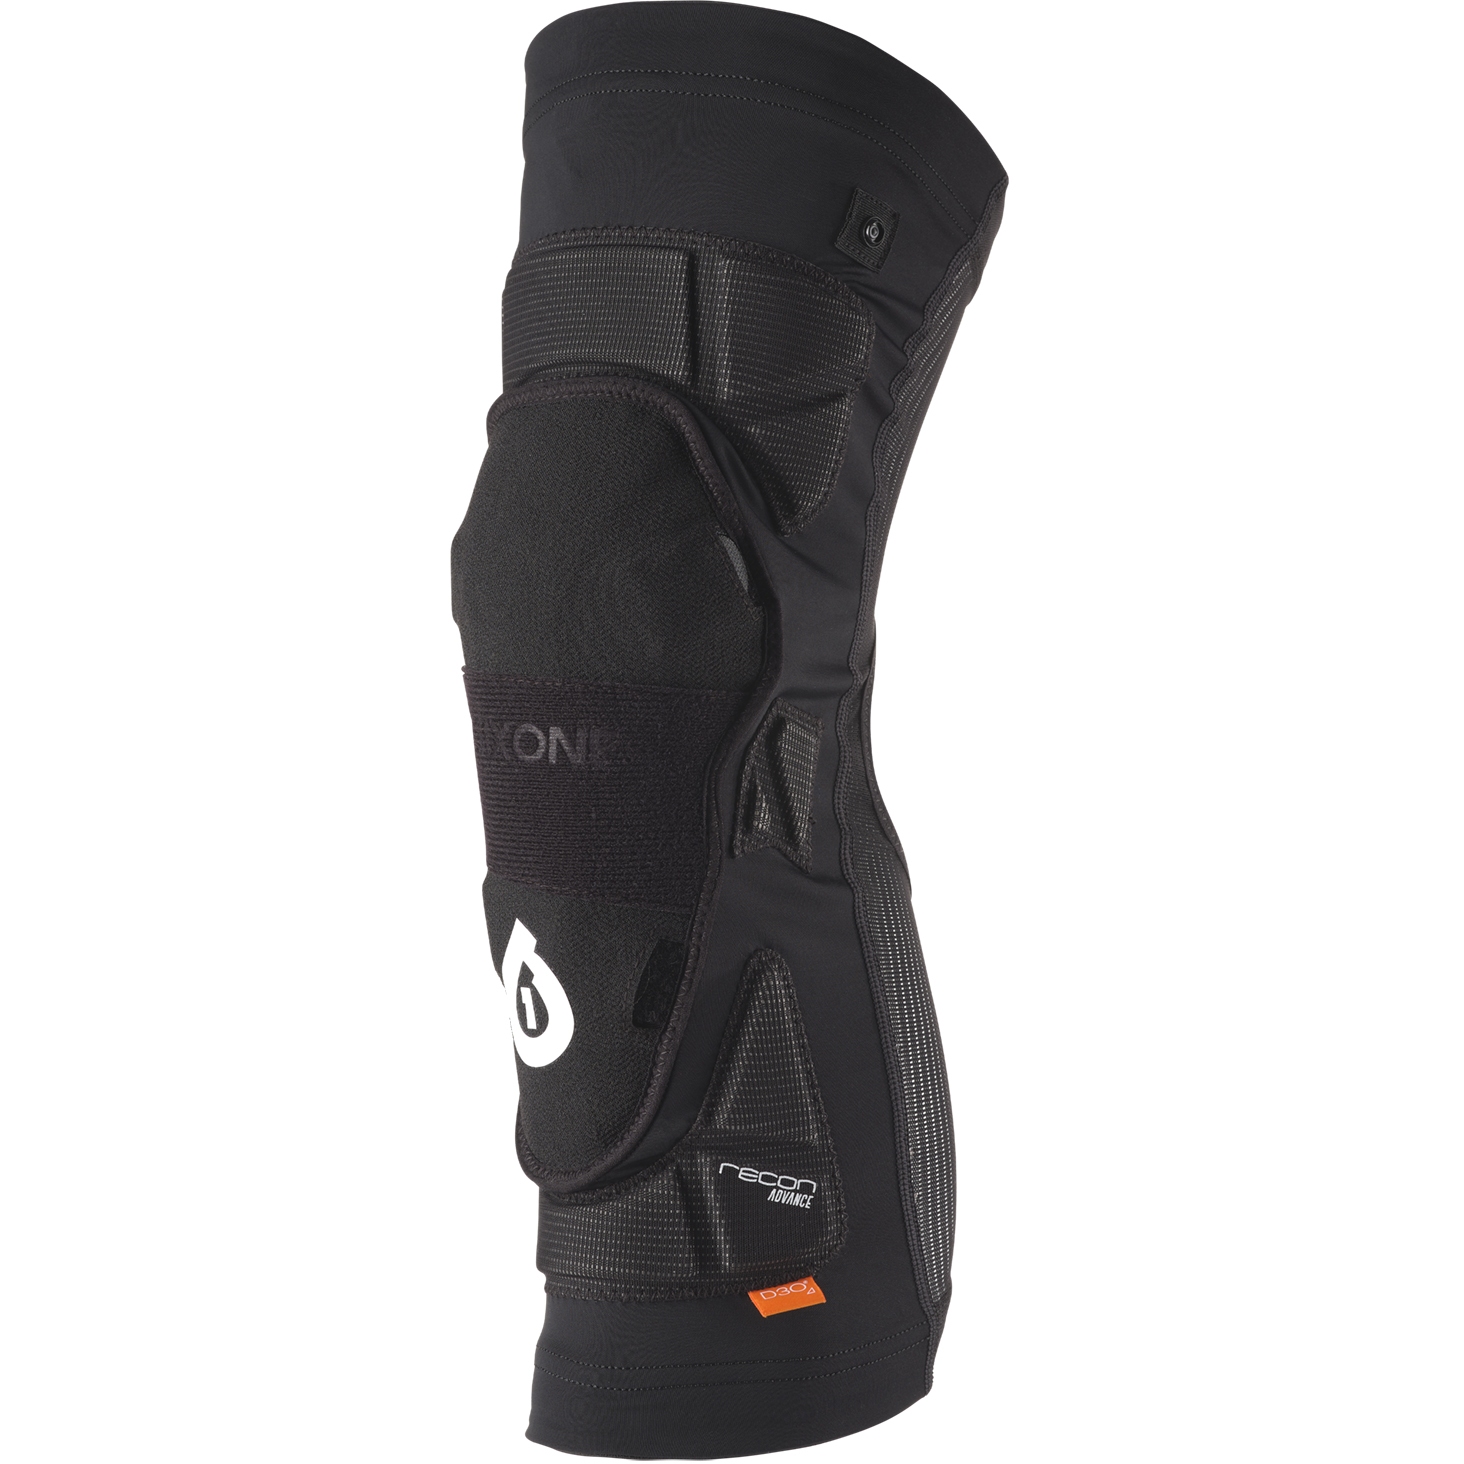 Productfoto van SIXSIXONE Recon Advance Kniebeschermer - Zwart